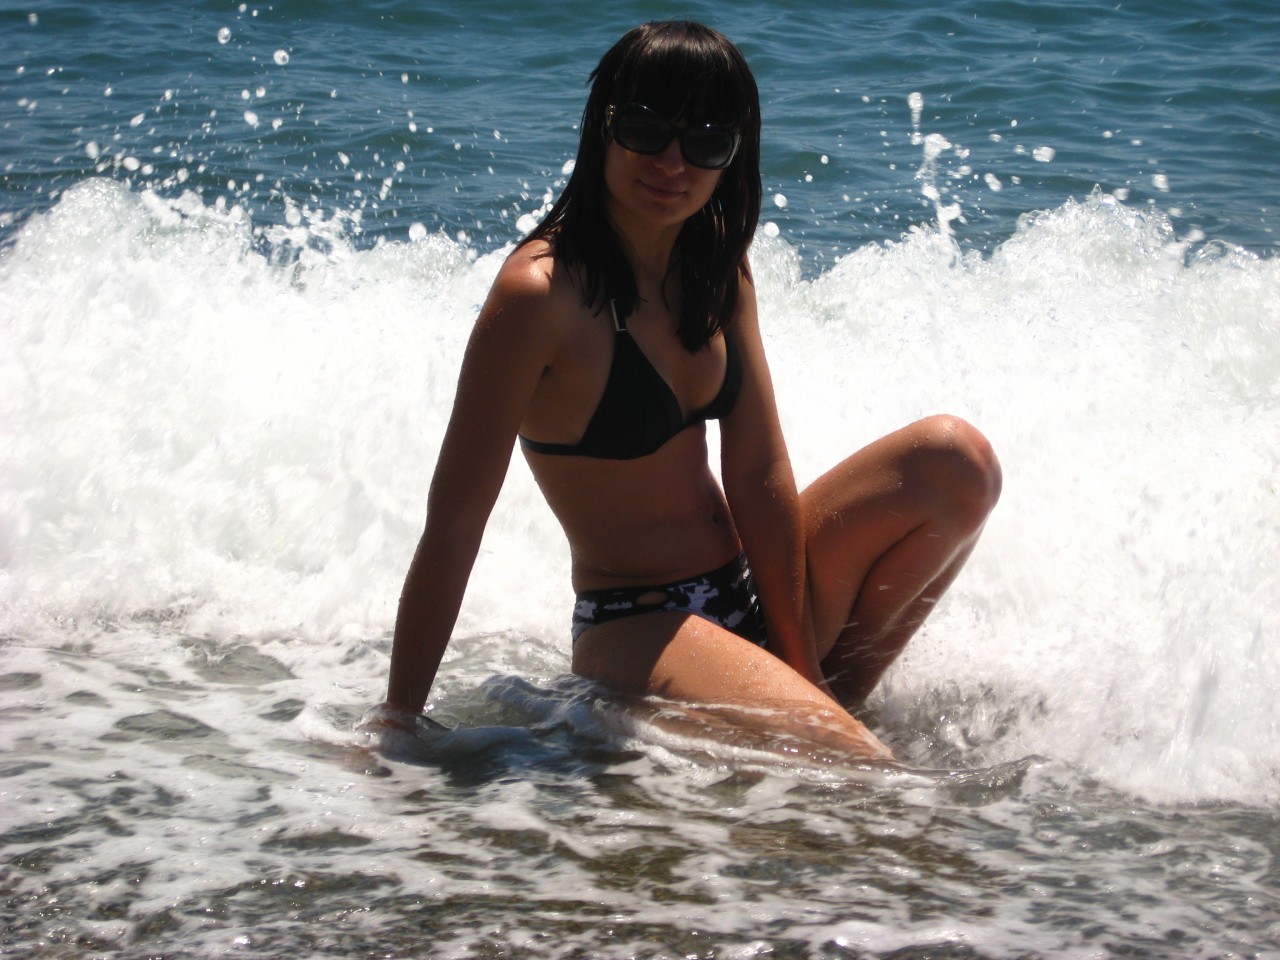 Марина Зеленина на фото в купальнике: смелая и уверенная в себе женщина